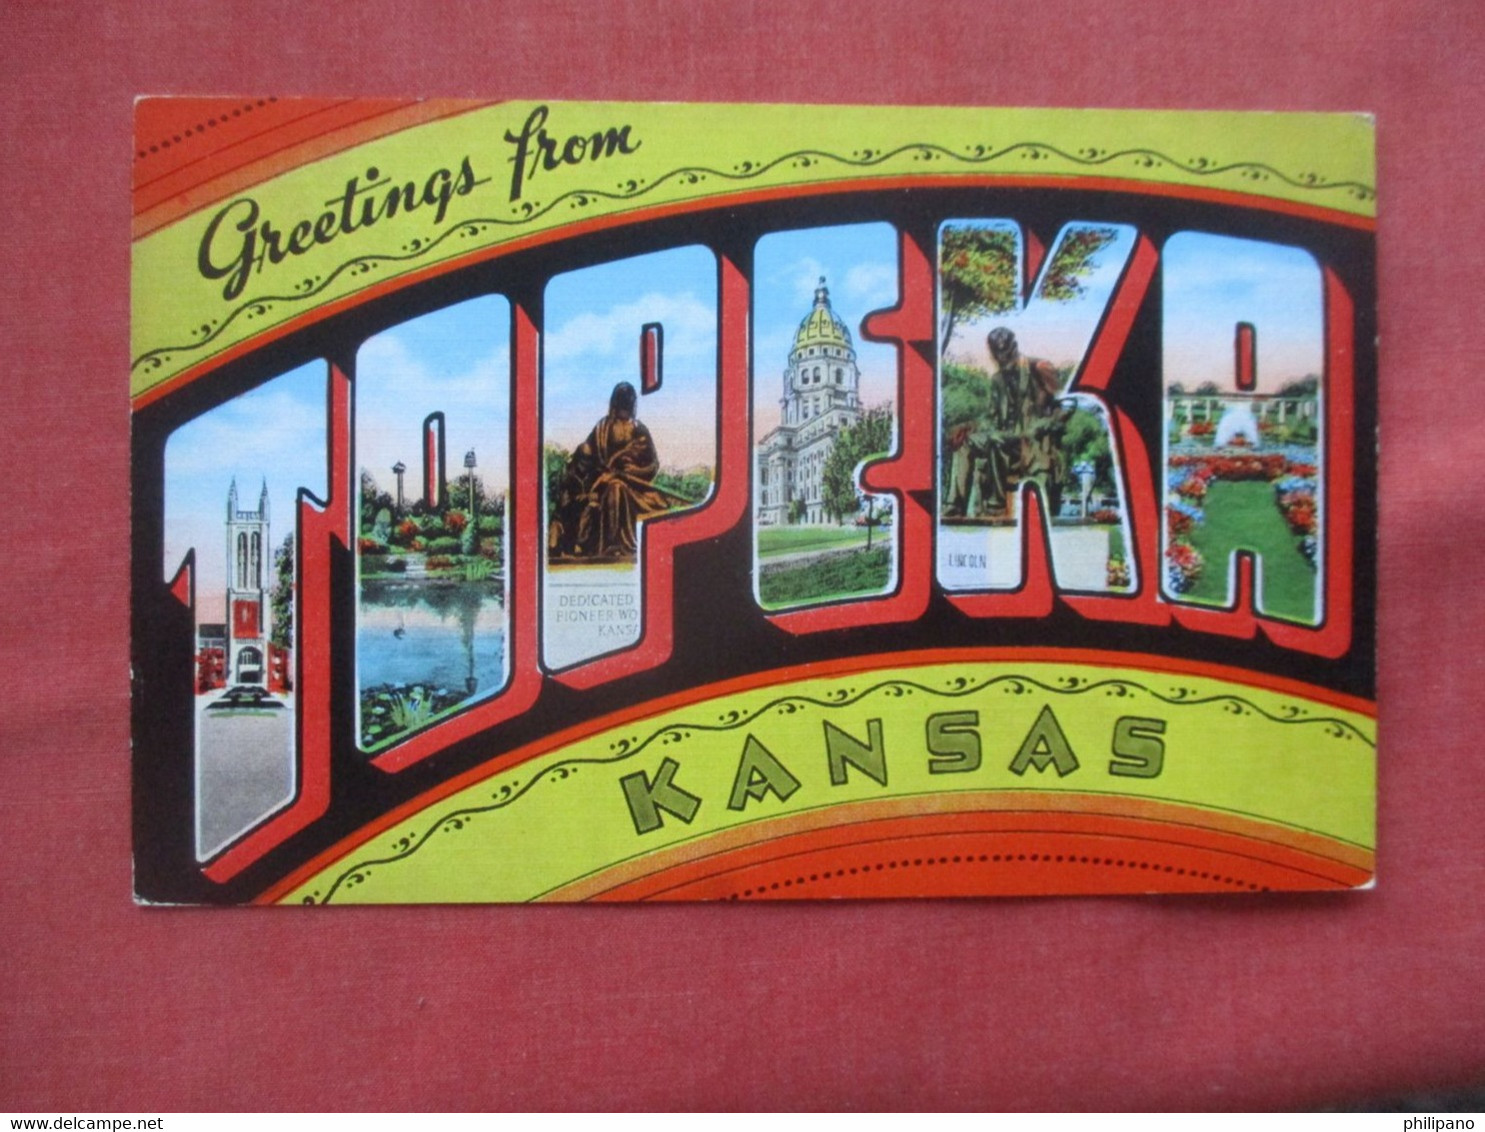 Greetings   Topeka  Kansas   ref 5698 - Topeka